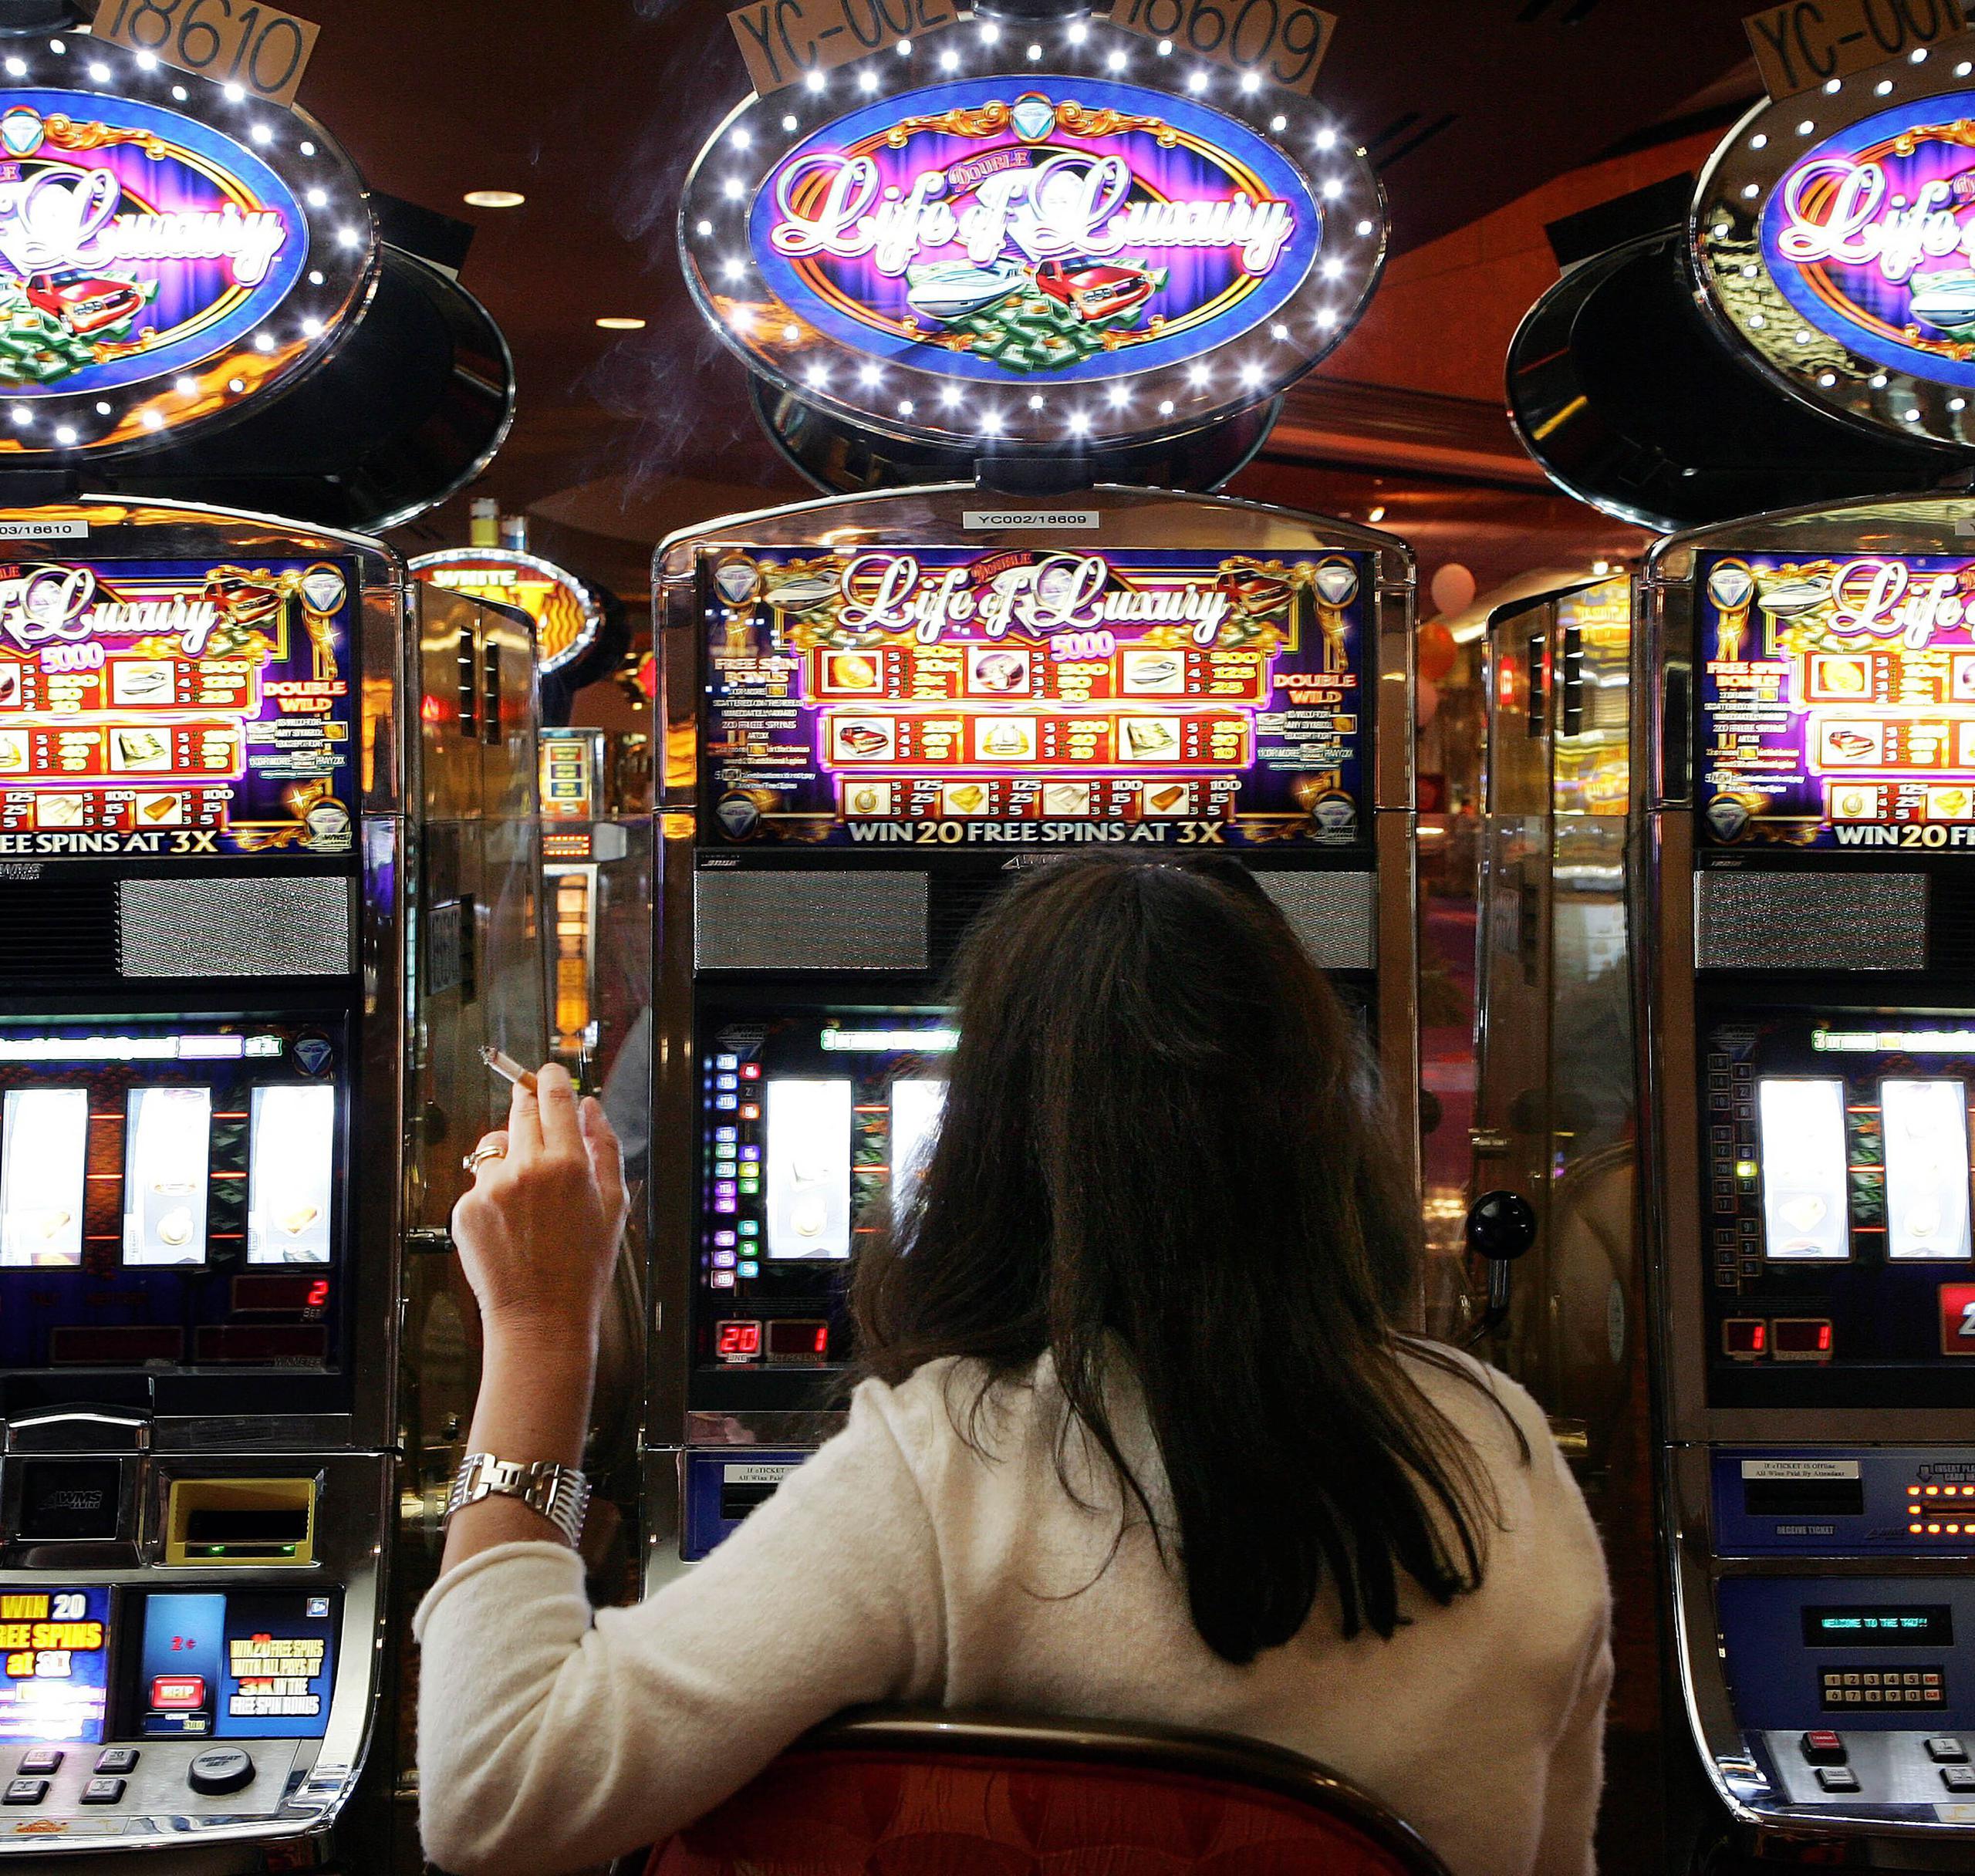 Los empresarios estimaron en $23 y $24 millones las pérdidas mensuales para los casinos y el gobierno.